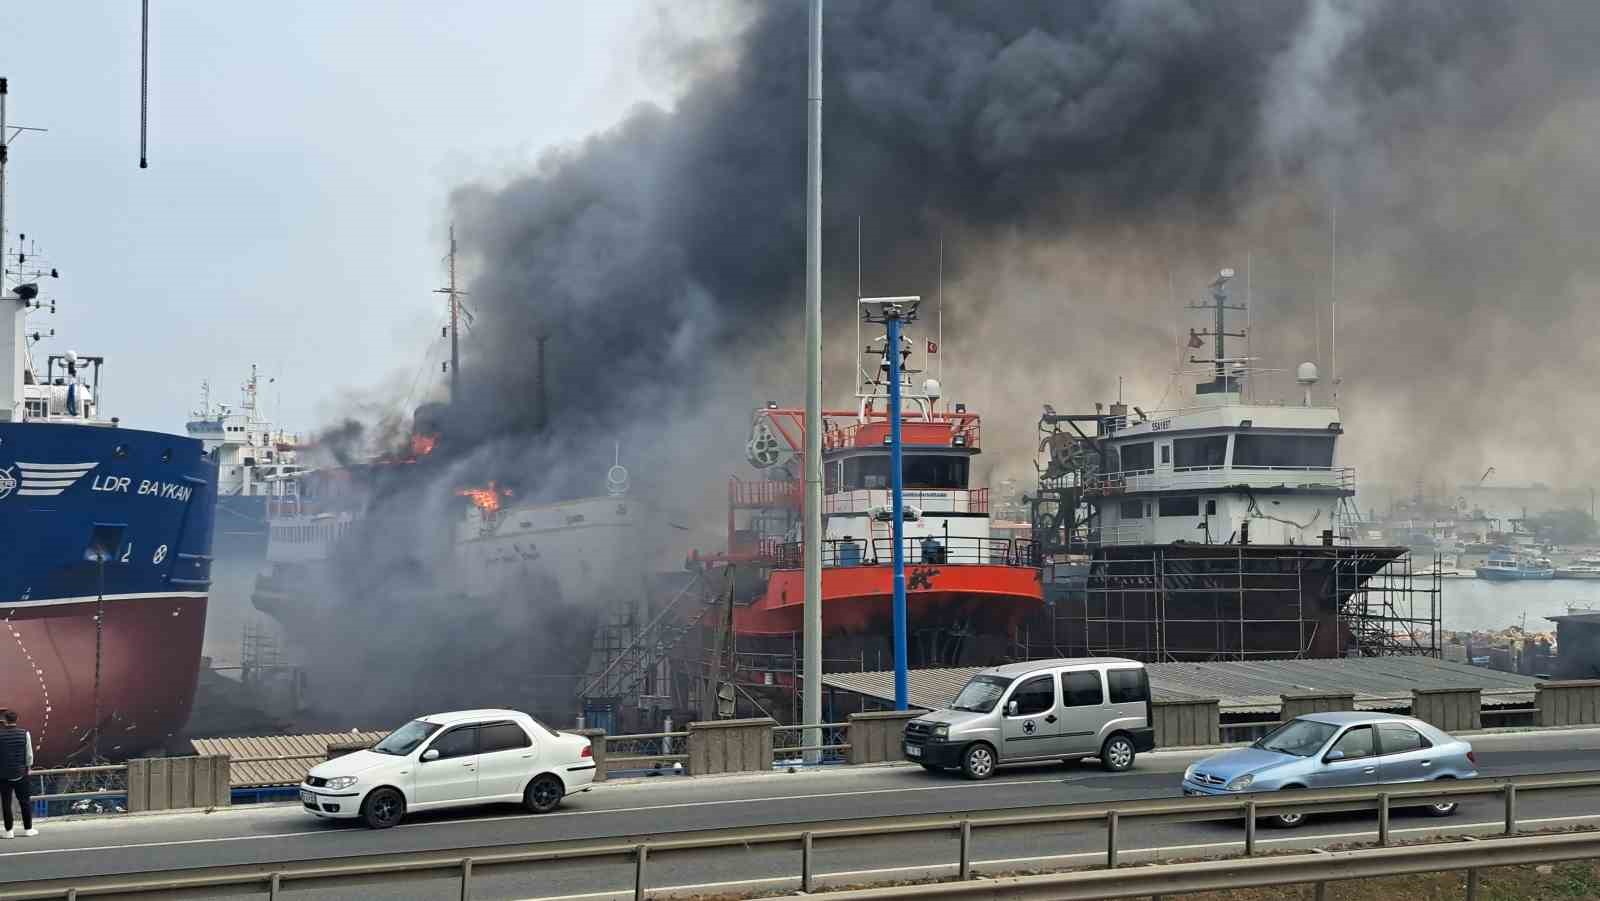 Ordu’nun Ünye ilçesinde tersanede bakım yapılan gezi teknesinde yangın çıktı. İtfaiye ekipleri yangına müdahale ediyor.